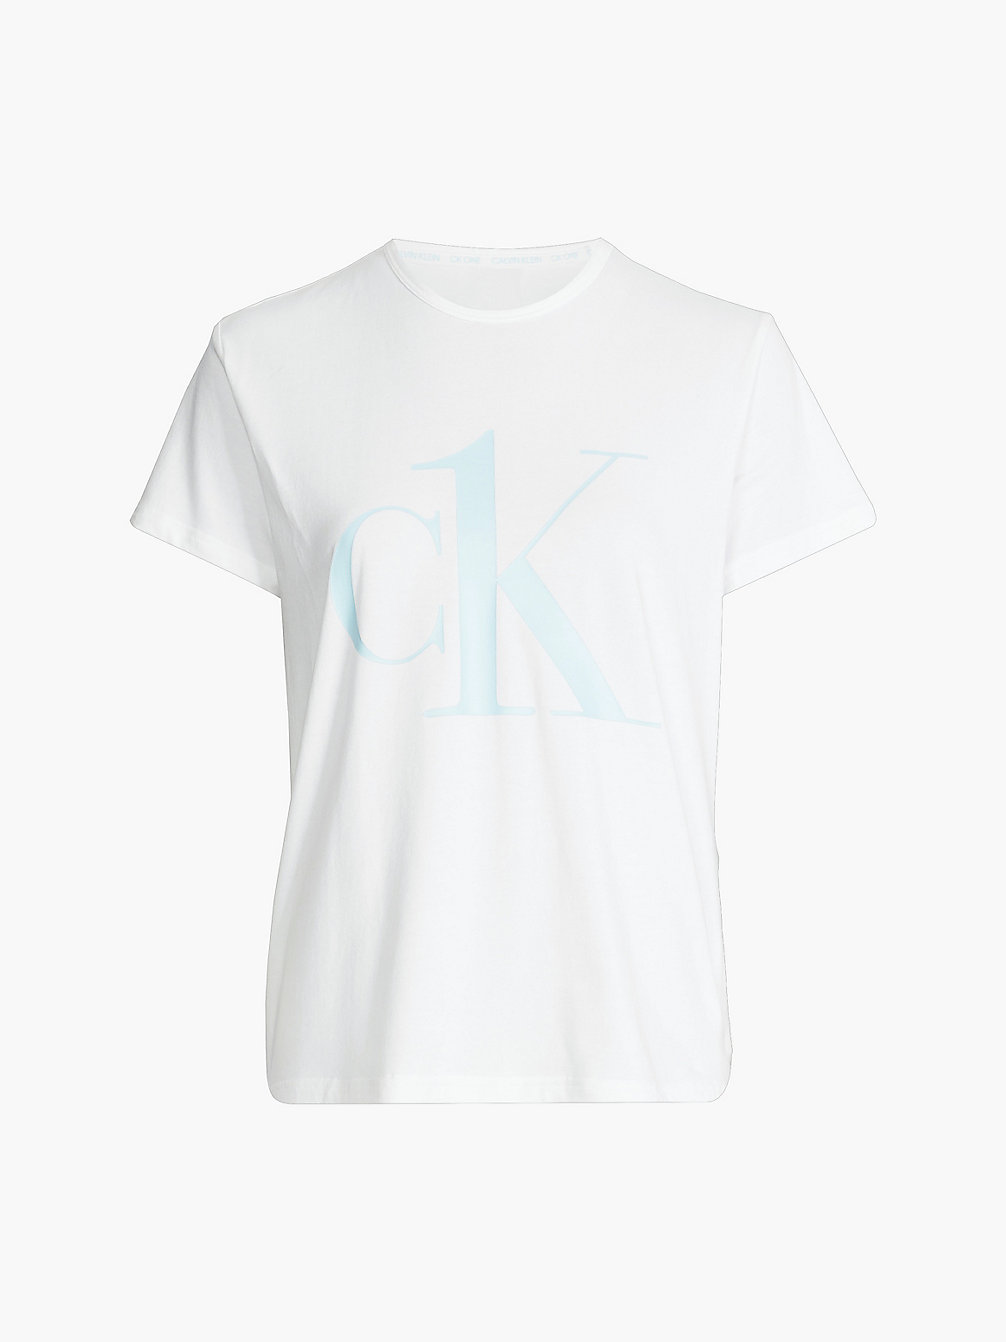 WHITE W/ PALEST BLUE LOGO Pyjamatop - CK One undefined dames Calvin Klein